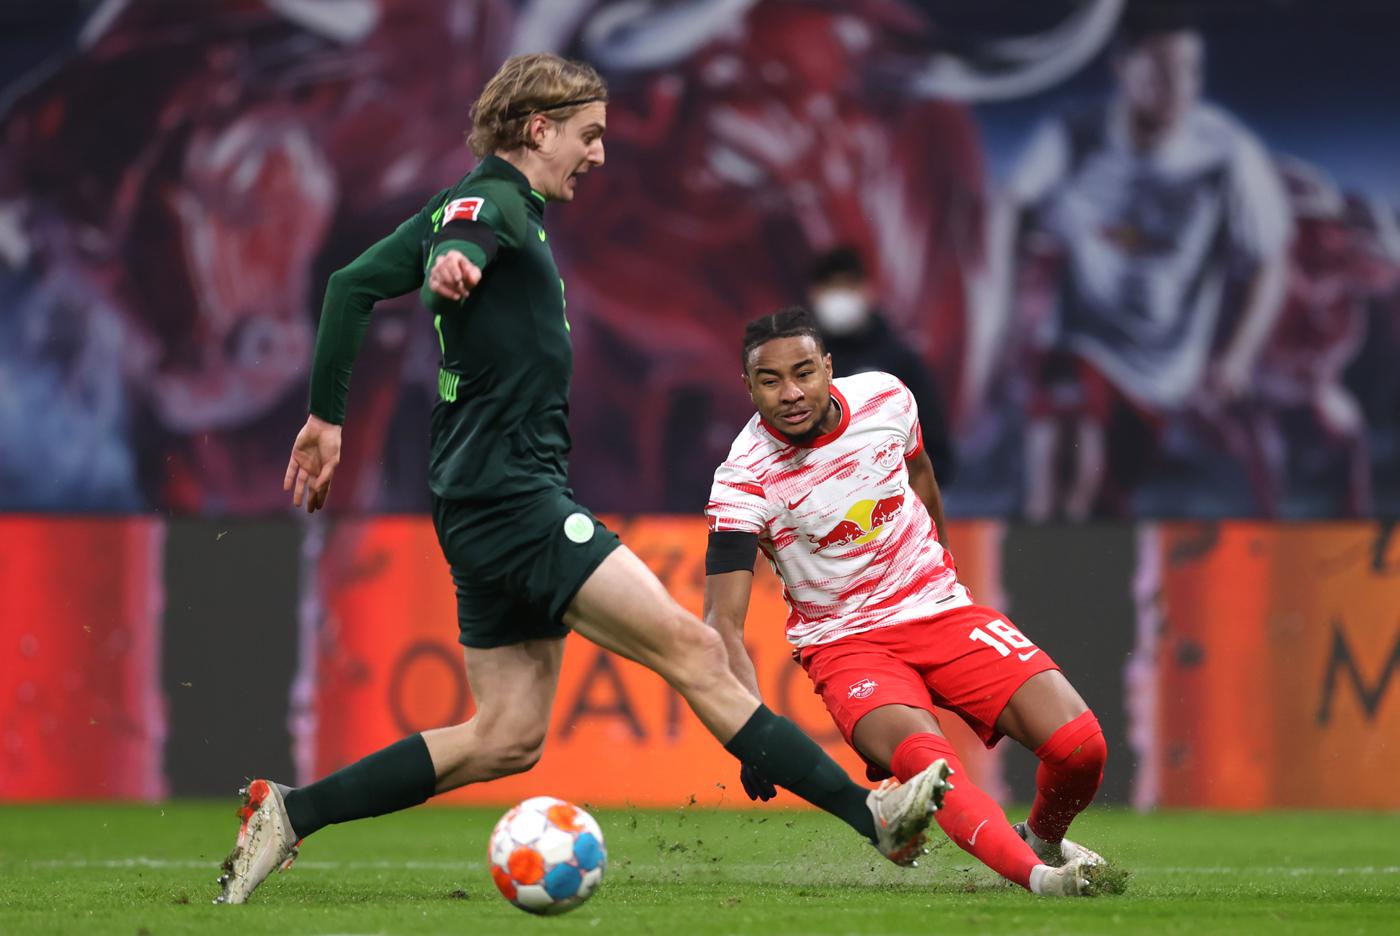 Wolfsburg - RB Leipzig - 0:3. Deutsche Meisterschaft, Runde 21